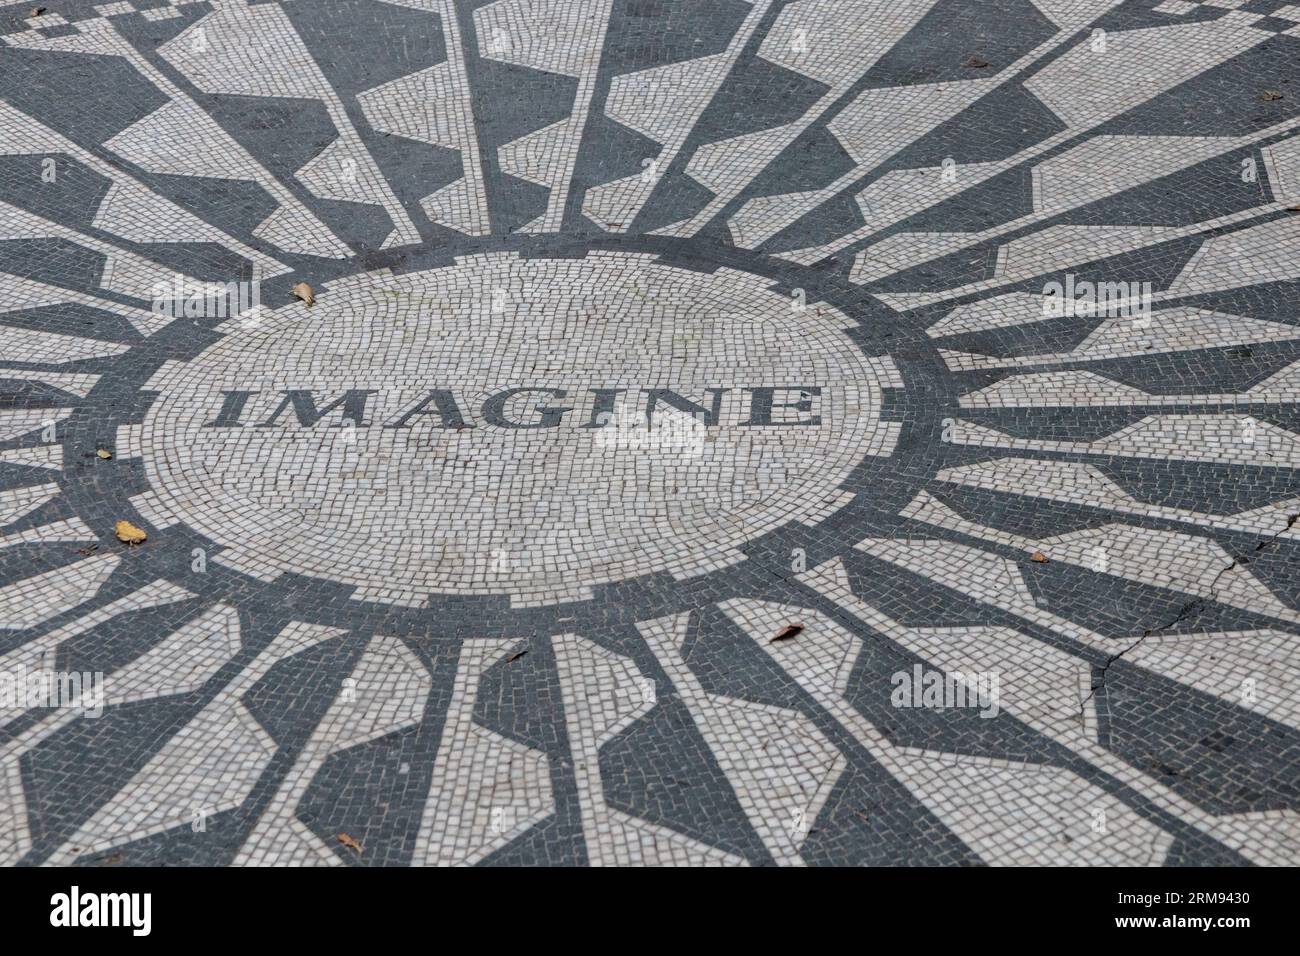 La didascalia "Imagine" sul mosaico commemorativo di Strawberry Fields John Lennon, Central Park, New York, USA Foto Stock